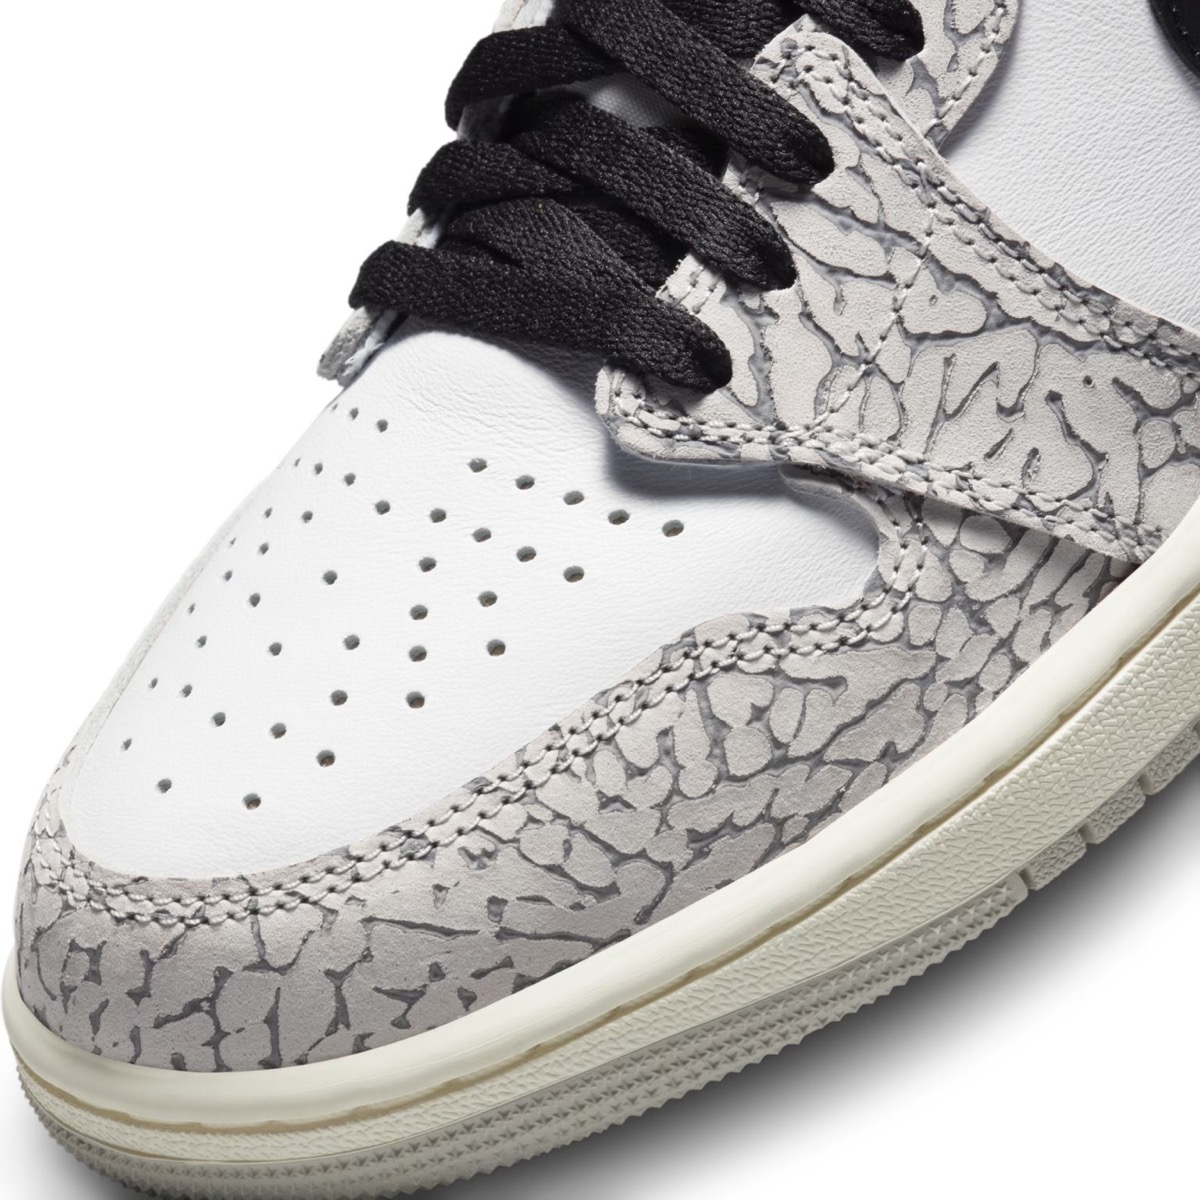 Nike Air Jordan 1 Retro High OG “White Cement”が国内3月1日に発売 